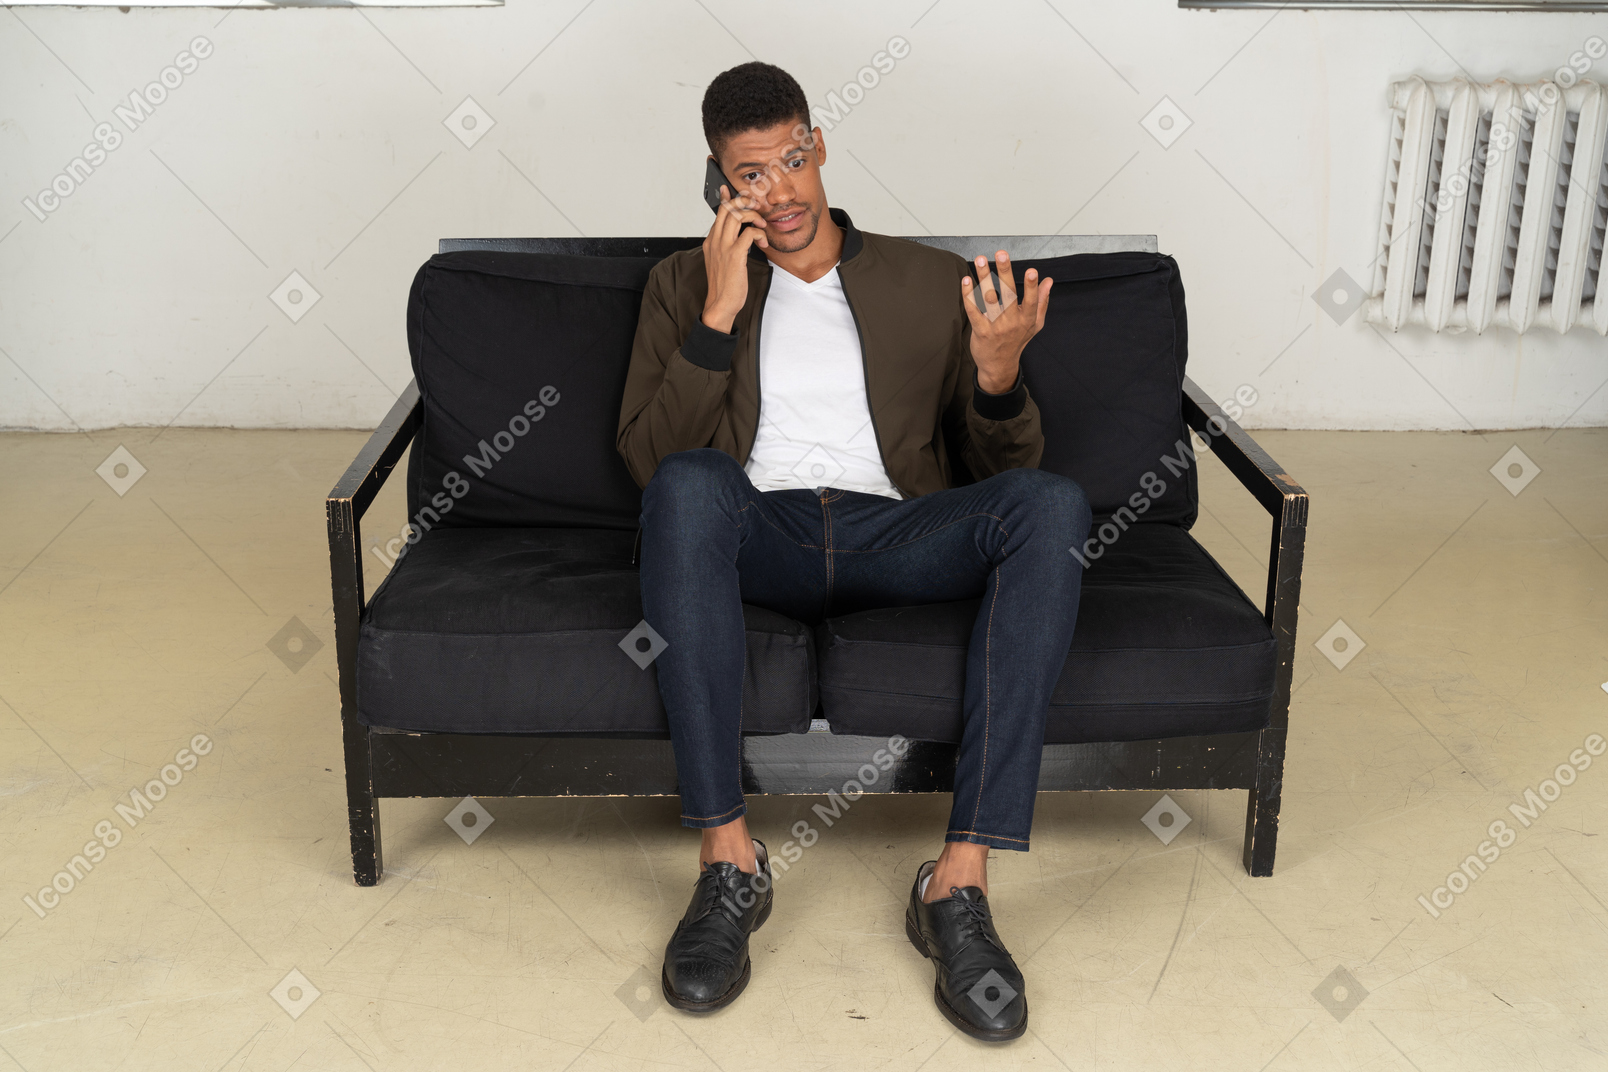 Vista frontal de um jovem perplexo sentado em um sofá e falando ao telefone